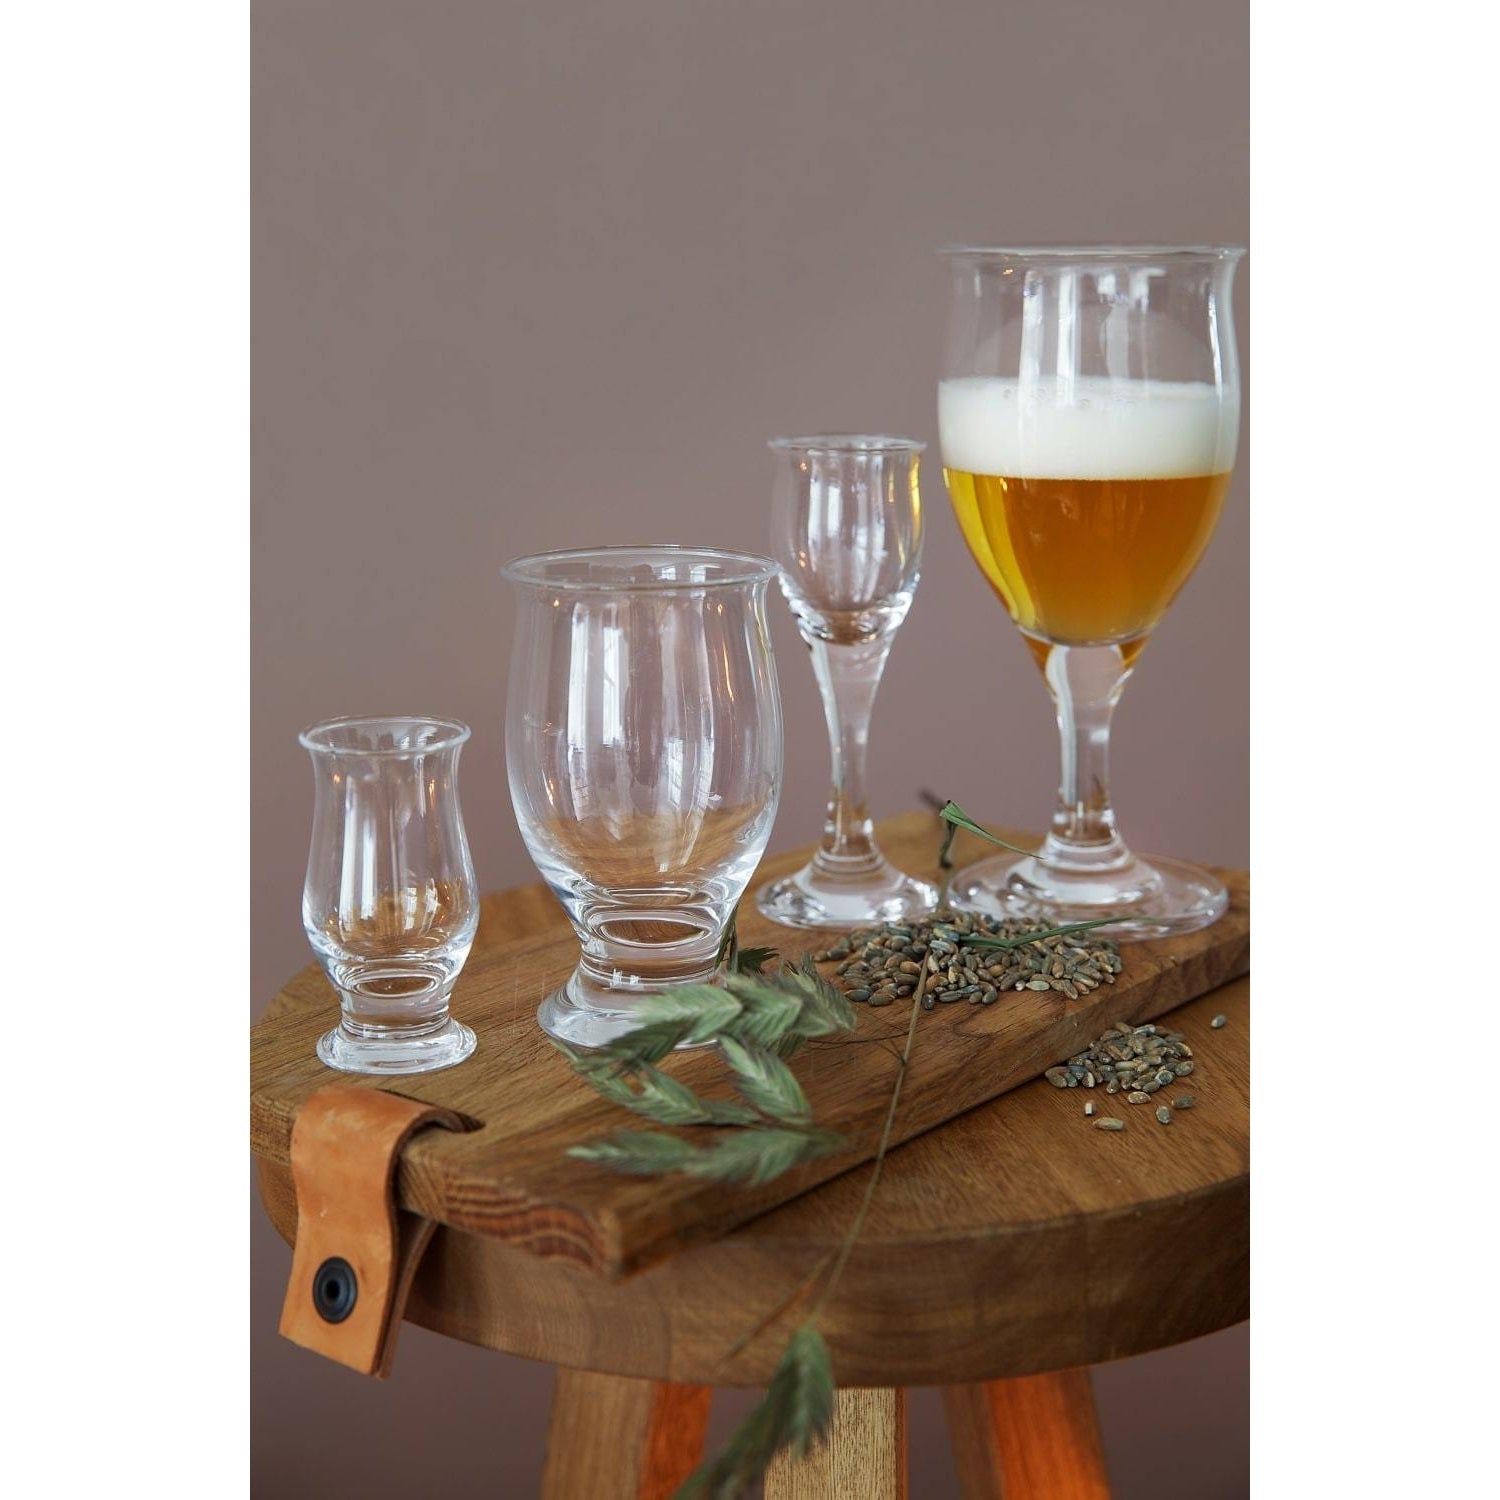 Holmegaard Idéelle Beer Glass con stile